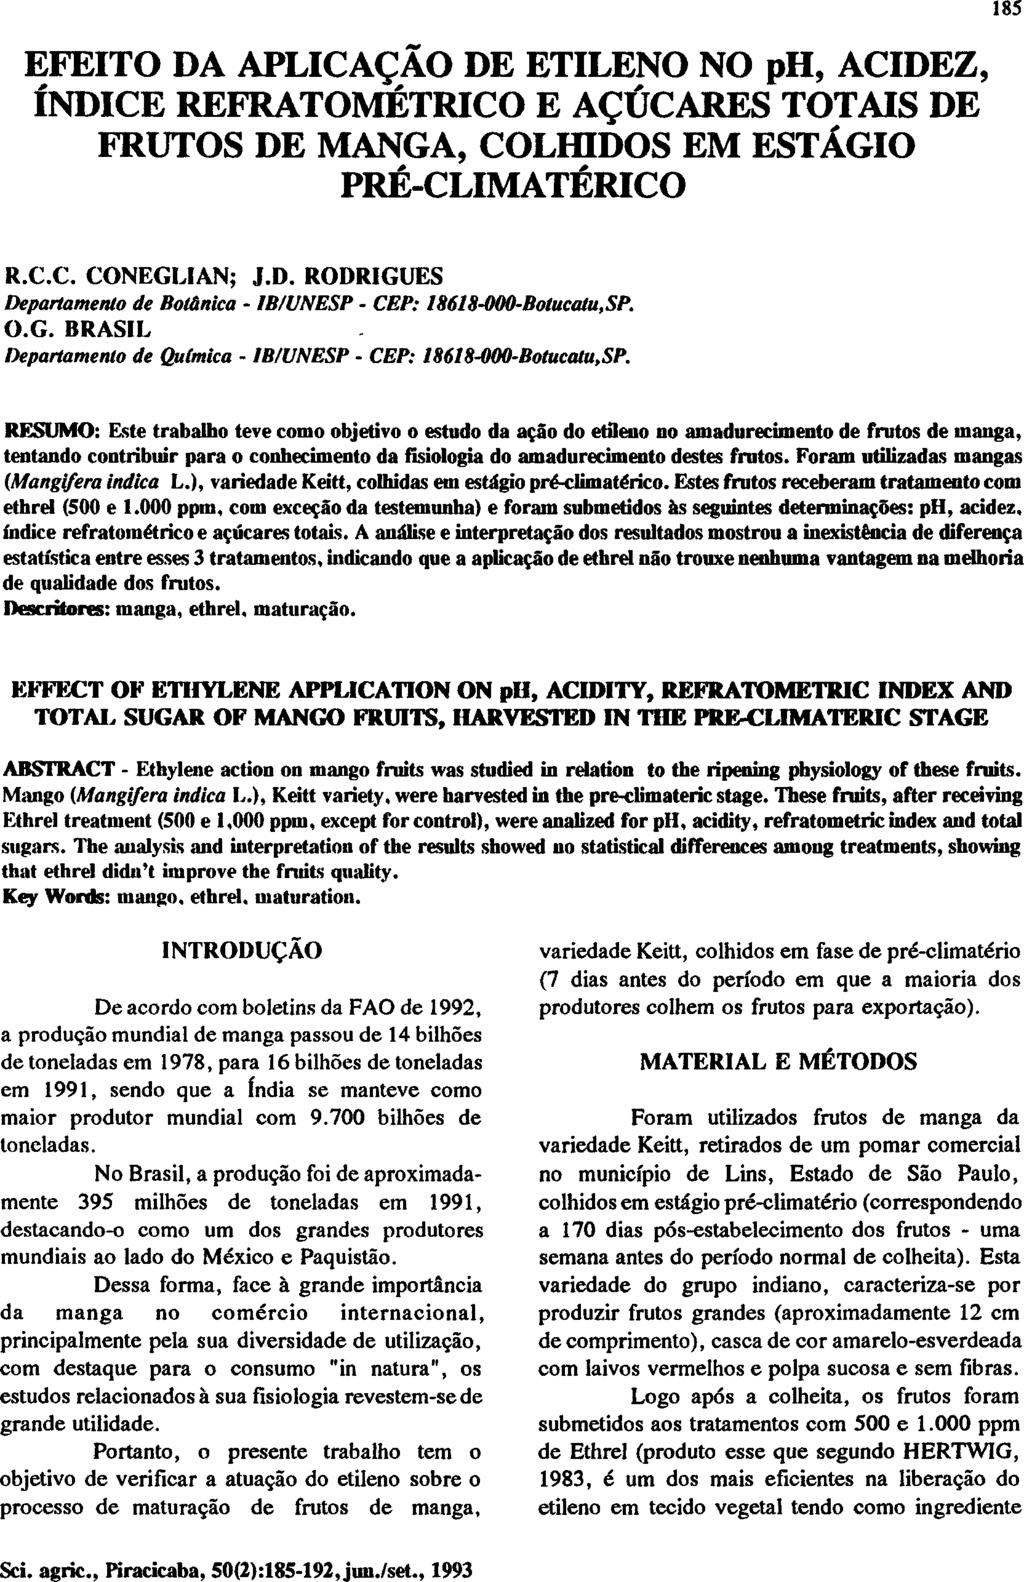 EFEITO DA APLICAÇÃO DE ETILENO NO ph, ACIDEZ, ÍNDICE REFRATOMÉTRICO E AÇÚCARES TOTAIS DE FRUTOS DE MANGA, COLHIDOS EM ESTÁGIO PRÉ-CLIMATÉRICO R.C.C. CONEGLIAN; J.D. RODRIGUES Departamento de Botánica - IB/UNESP - CEP: 18618-000-Botucatu,SP.